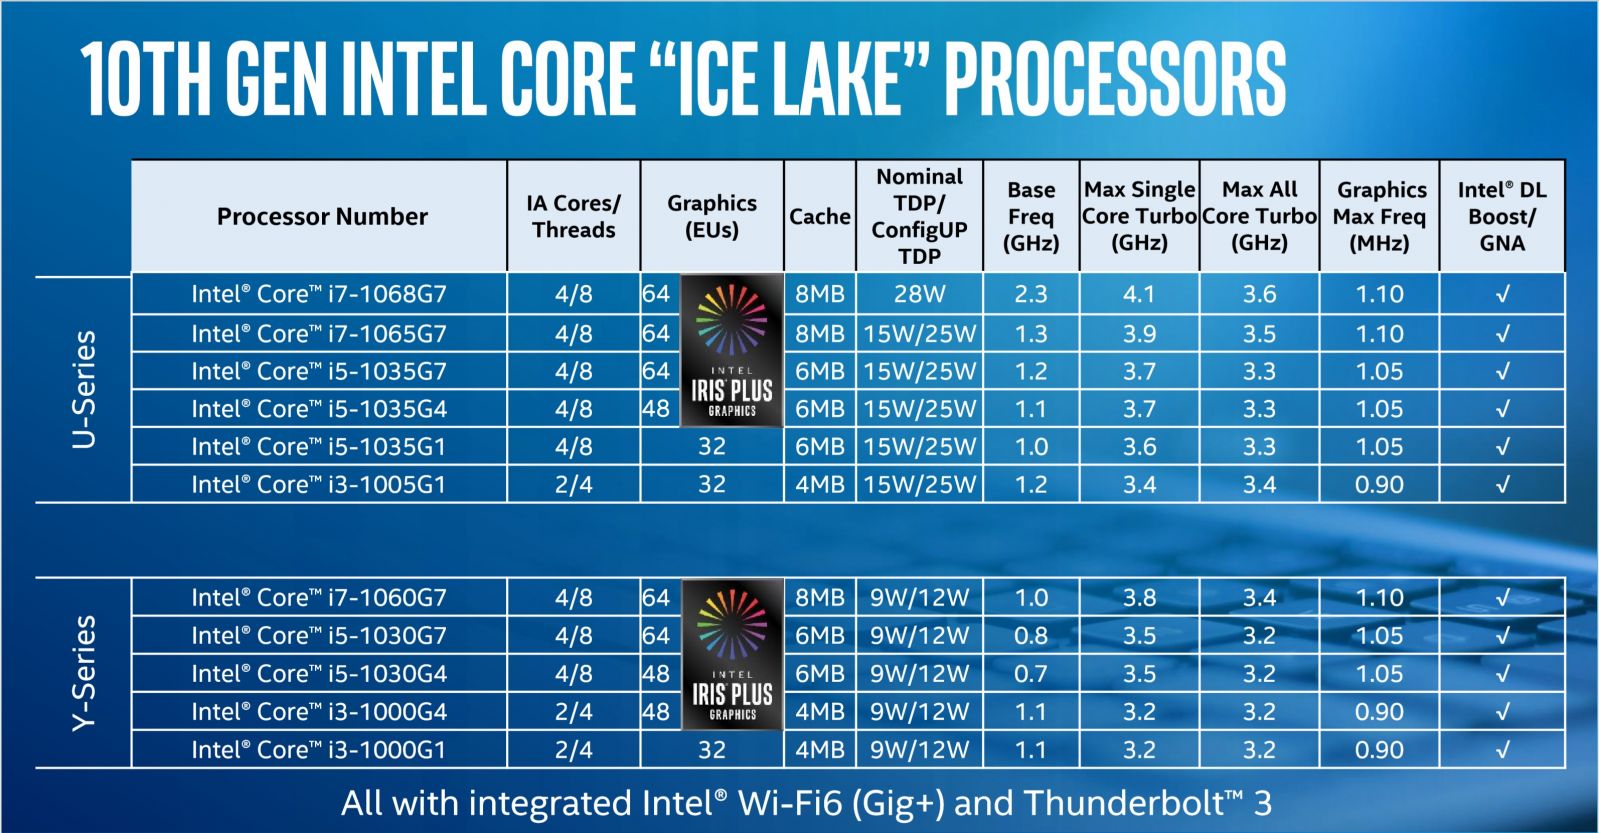 intel-ice-lake-speeds-and-feeds-no-watermark-100806899-orig 2.jpg